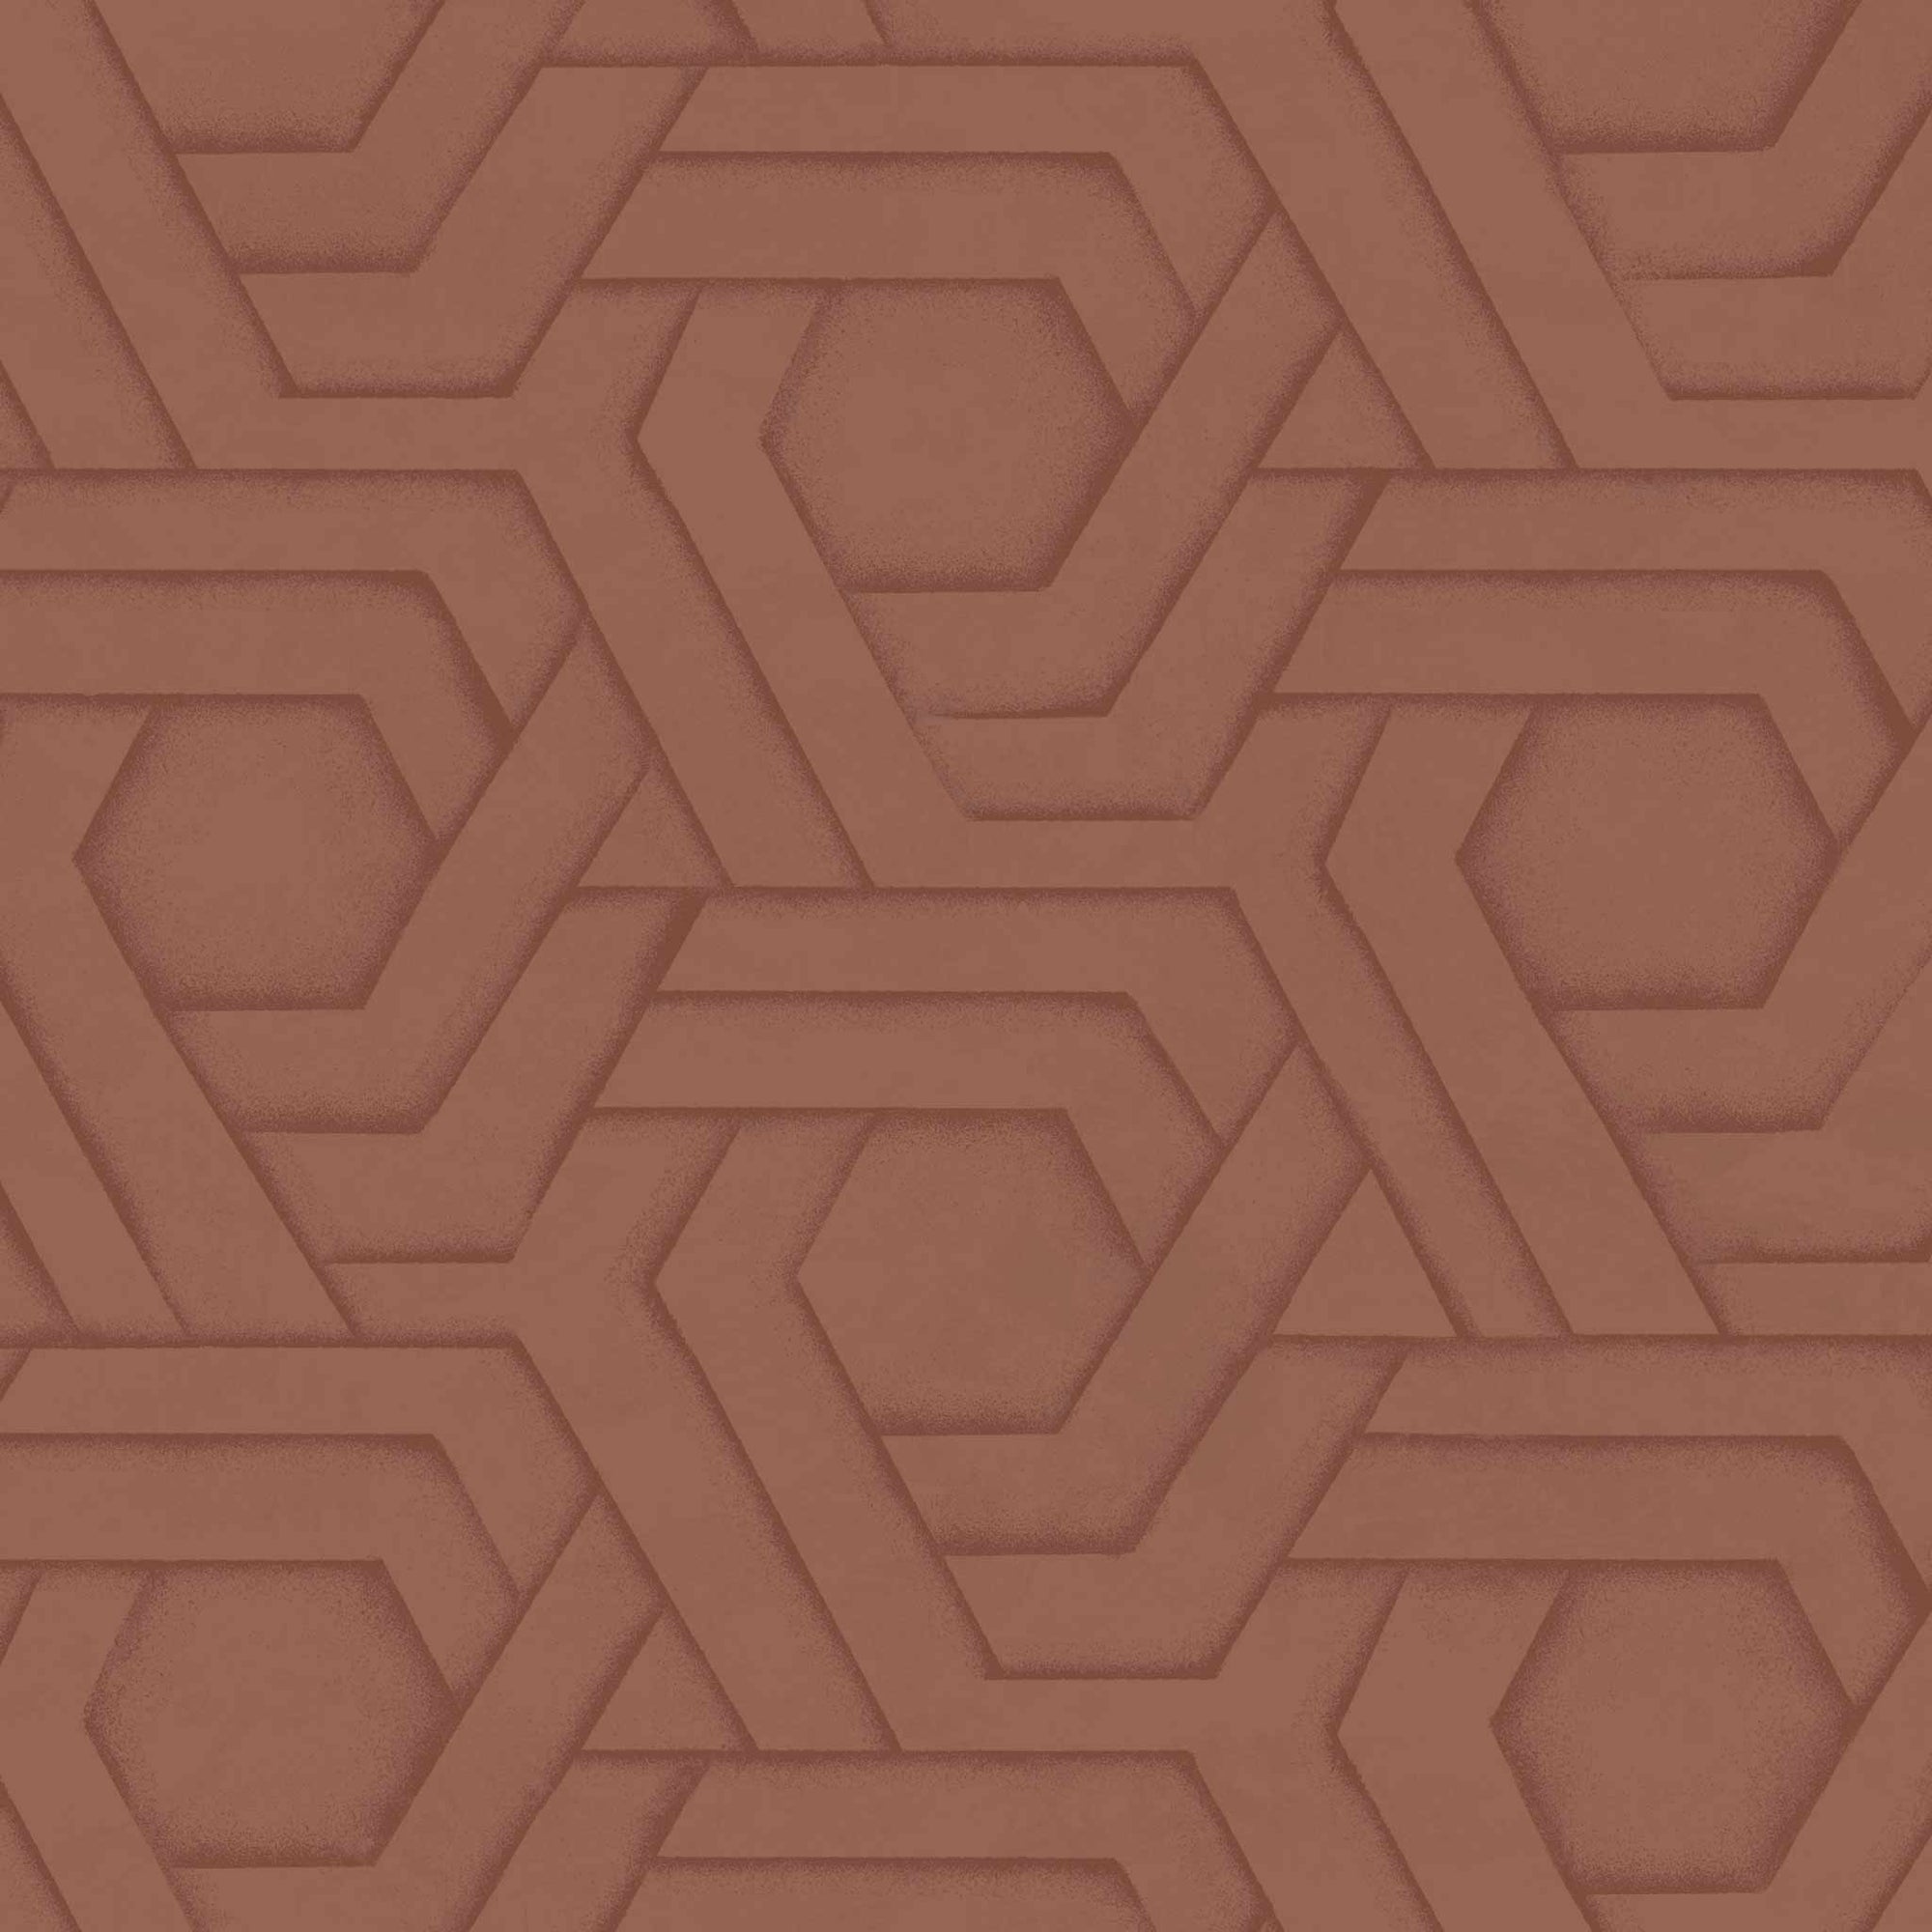 Habita wallpaper design - rust Hix pattern in Roobios